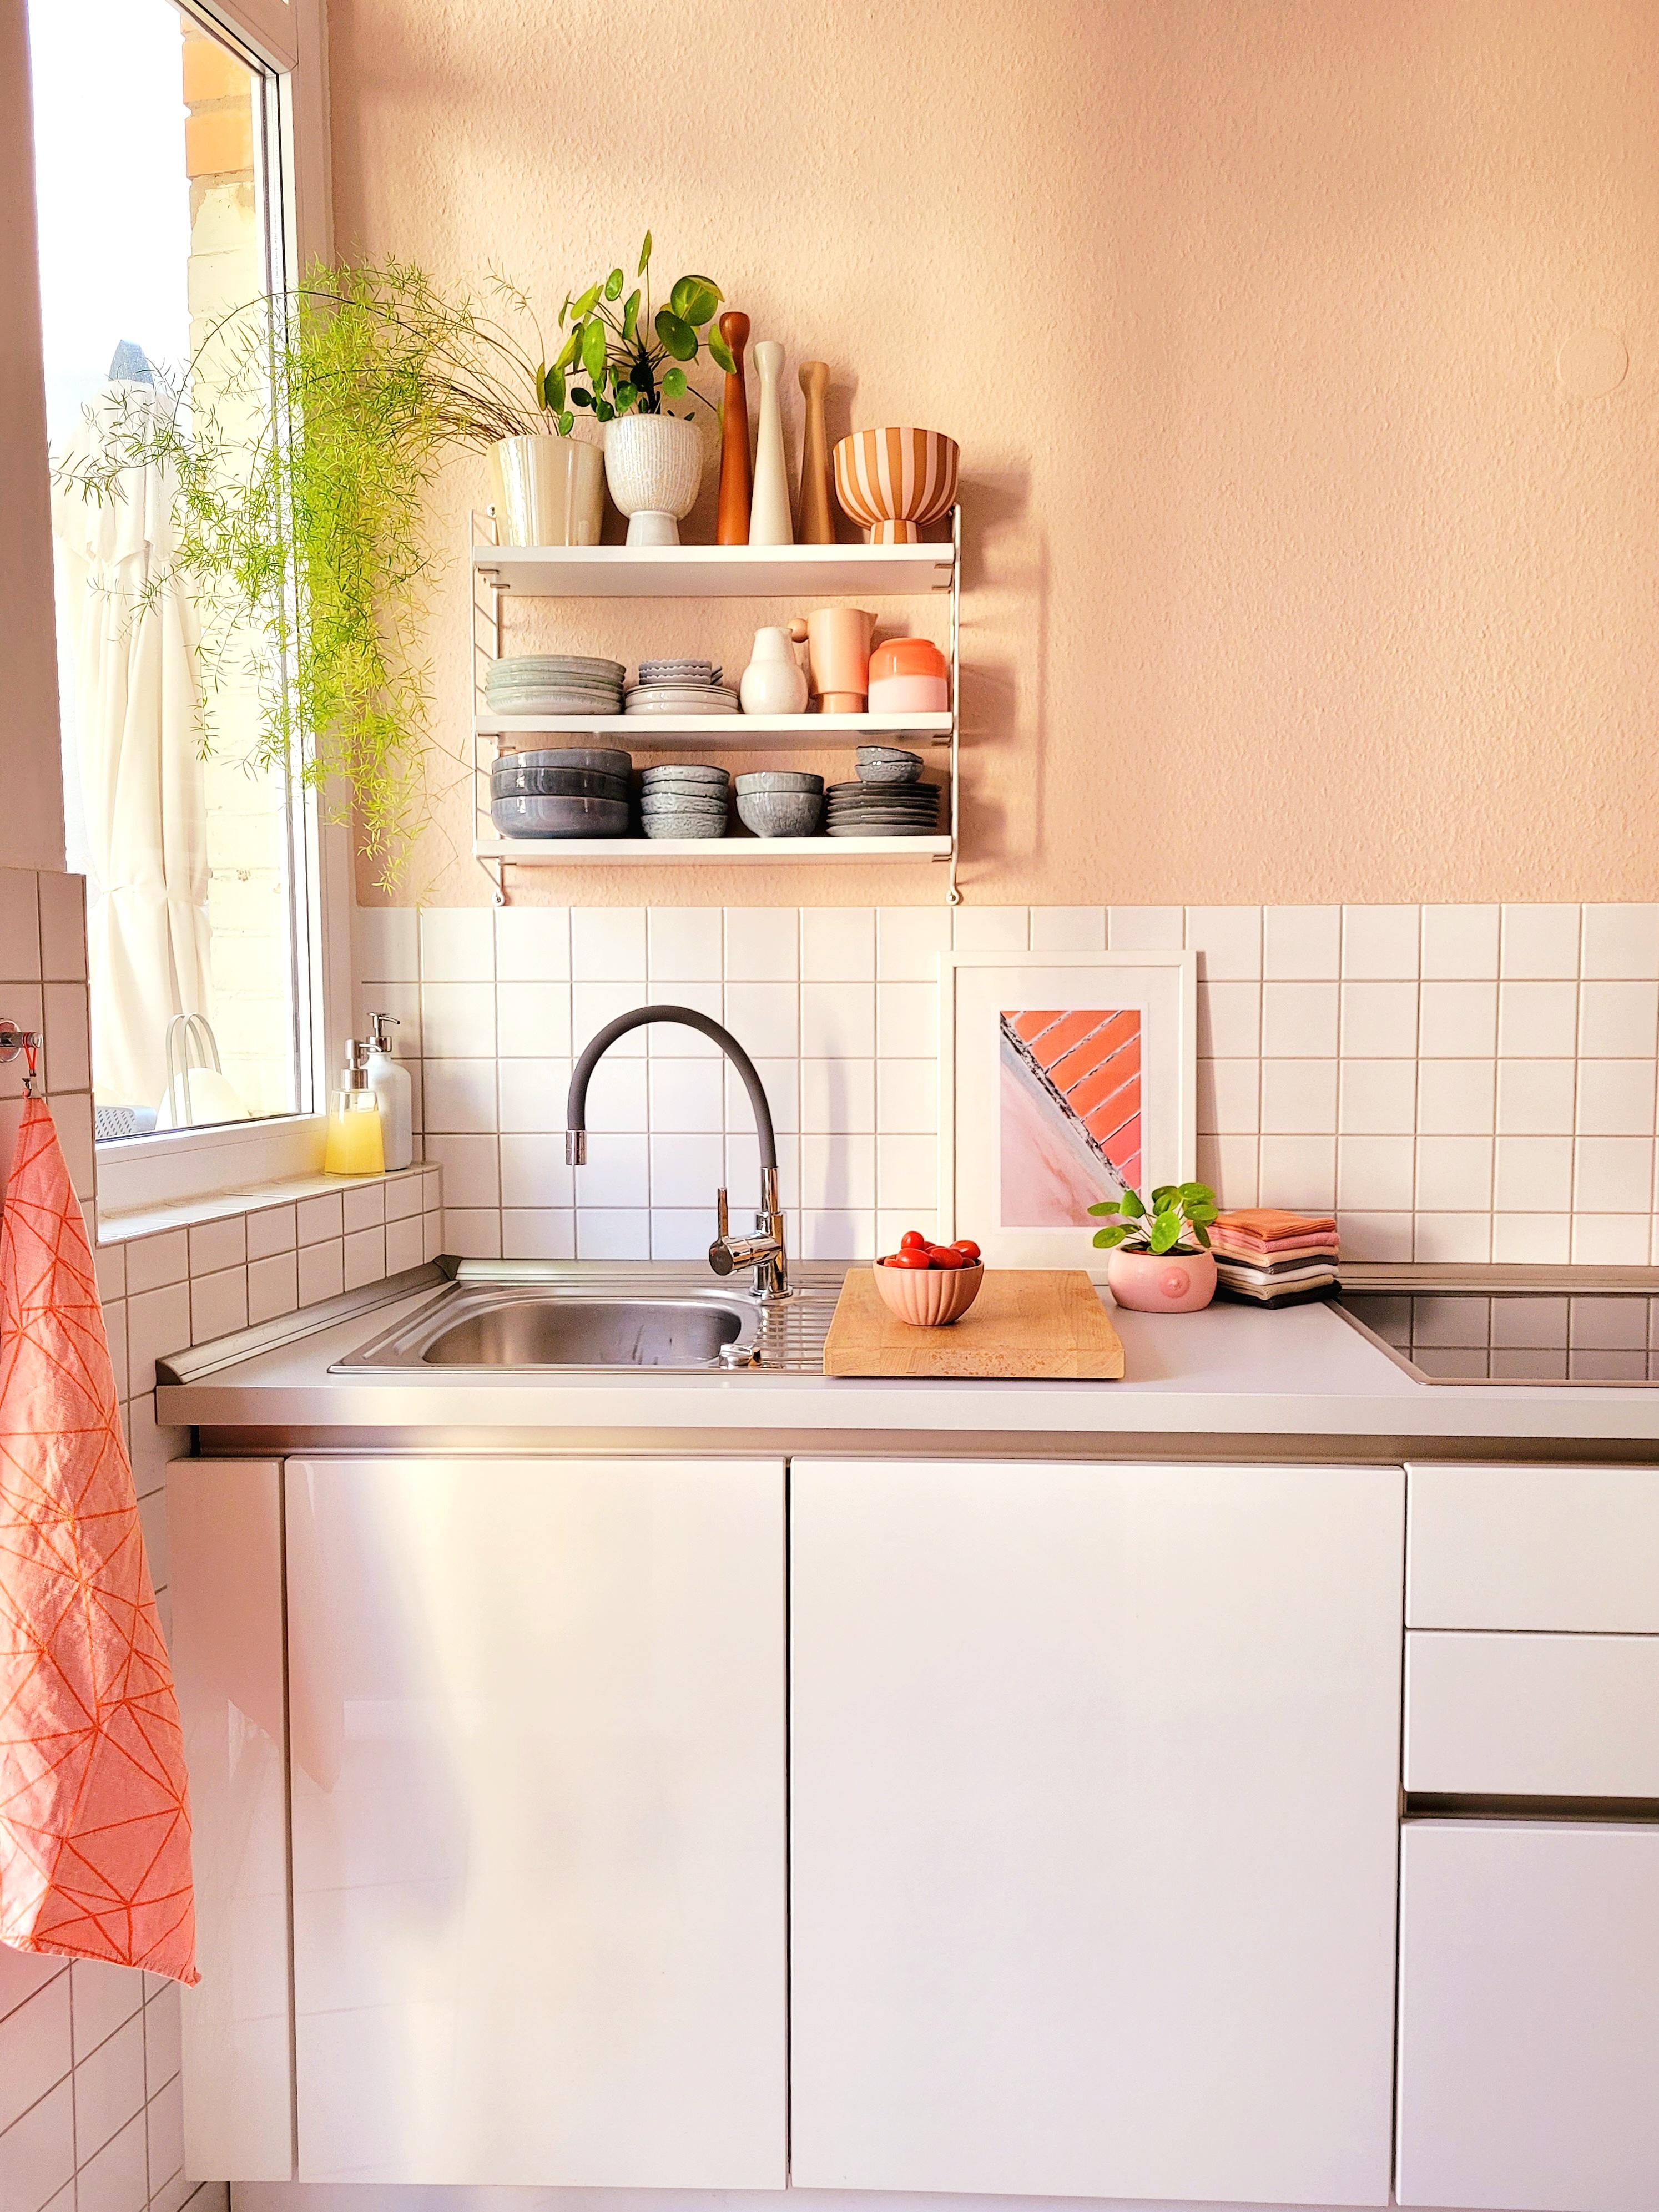 Hi aus meiner Küche!
#Altbau #küche #colorfulhome #porzellan #stringregal #bunt #posterliebe #Vasen 